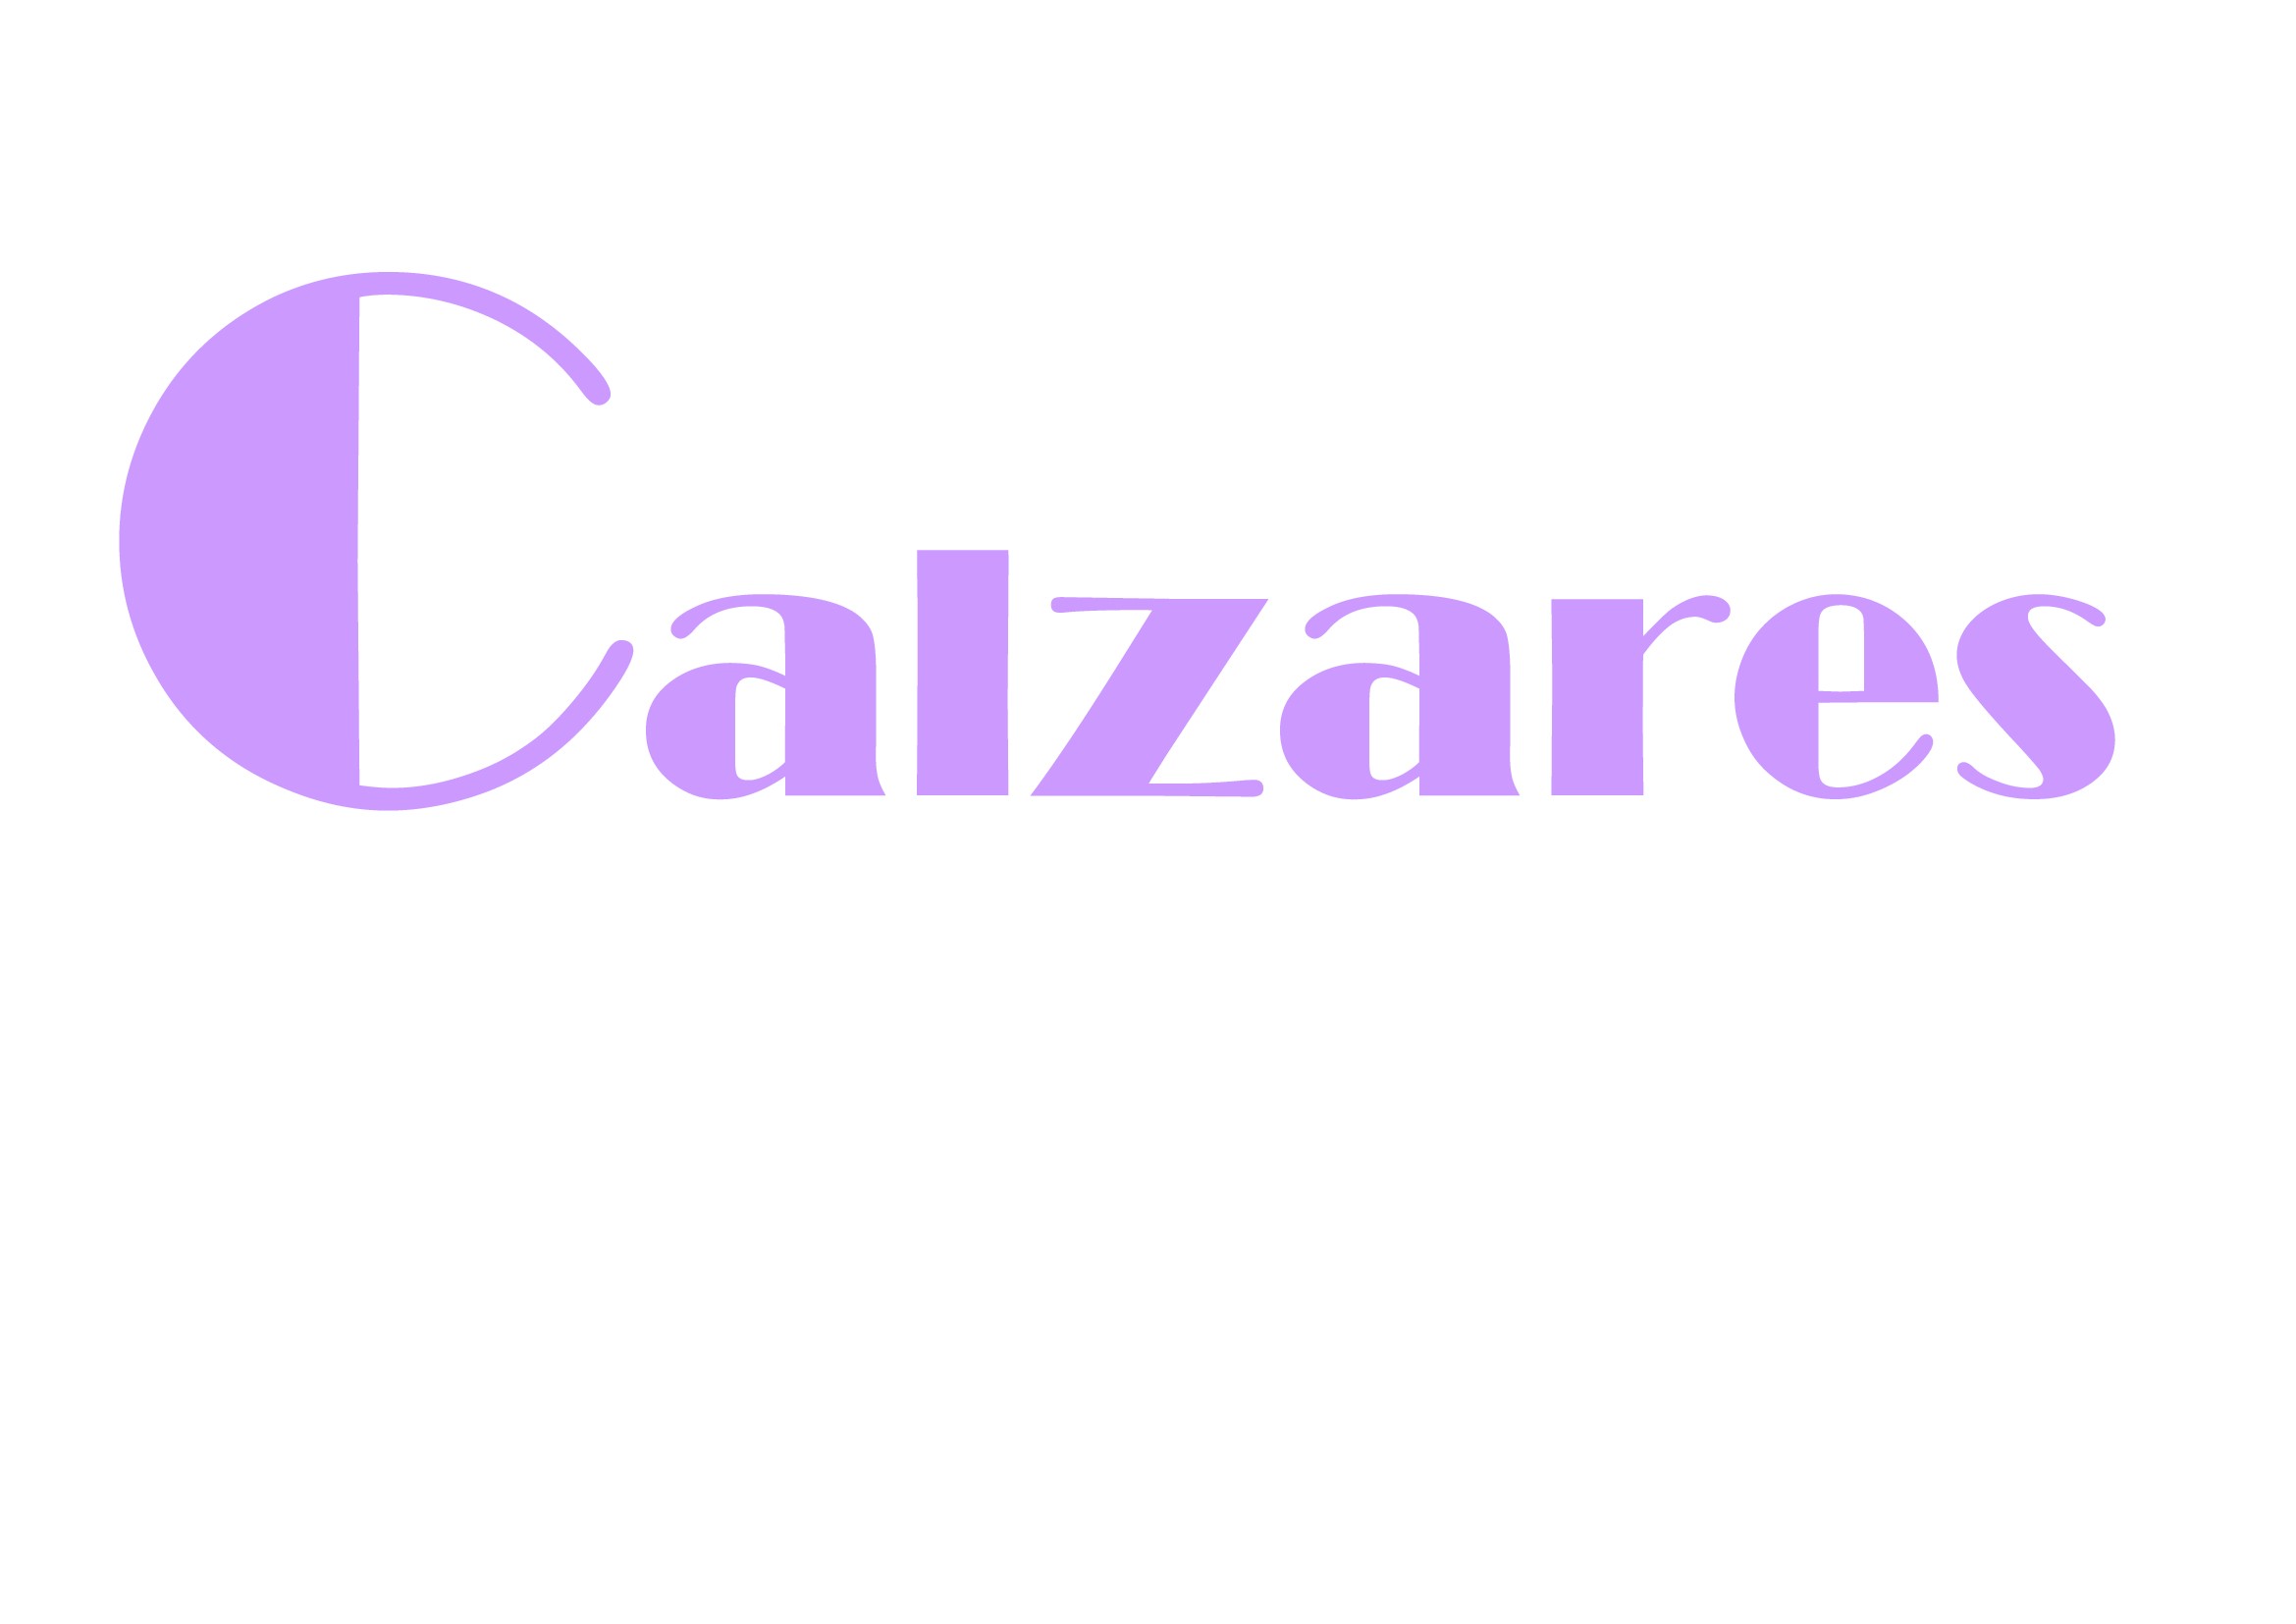 Calzares